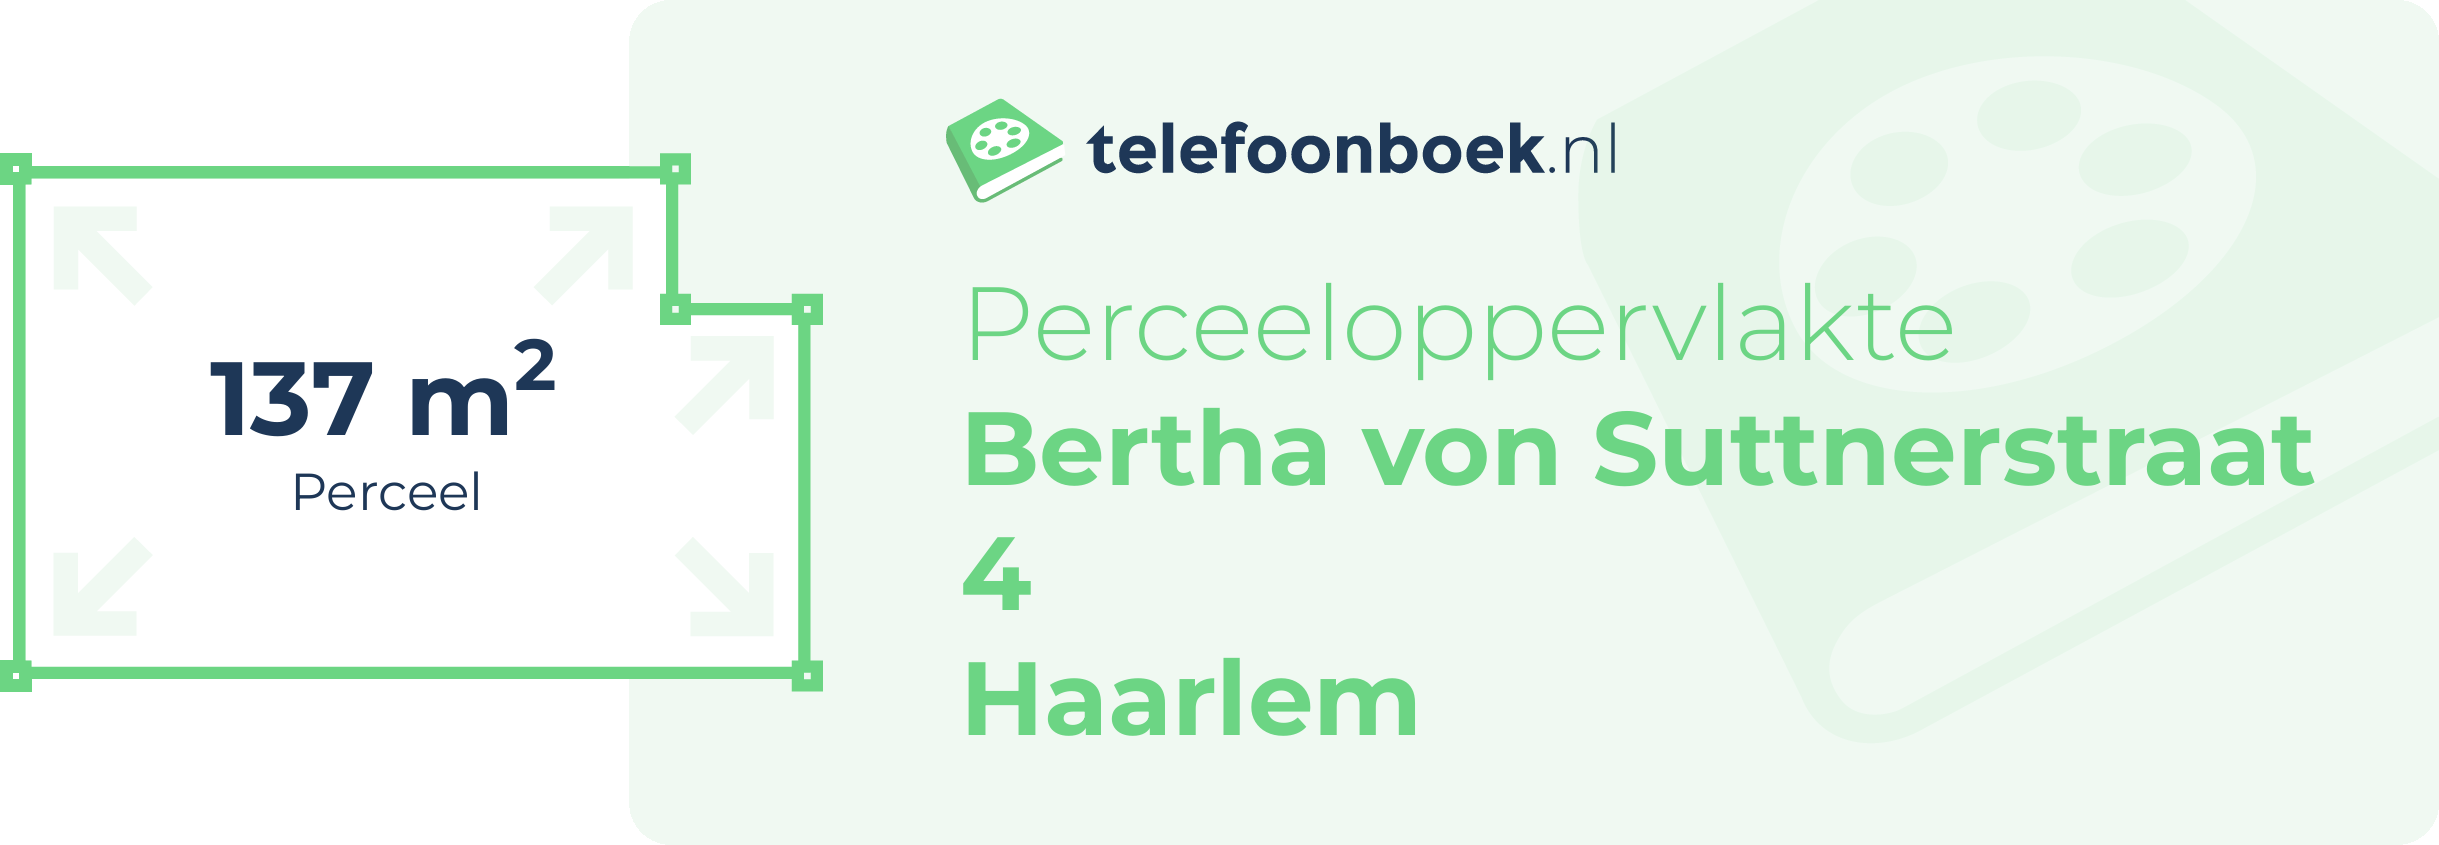 Perceeloppervlakte Bertha Von Suttnerstraat 4 Haarlem